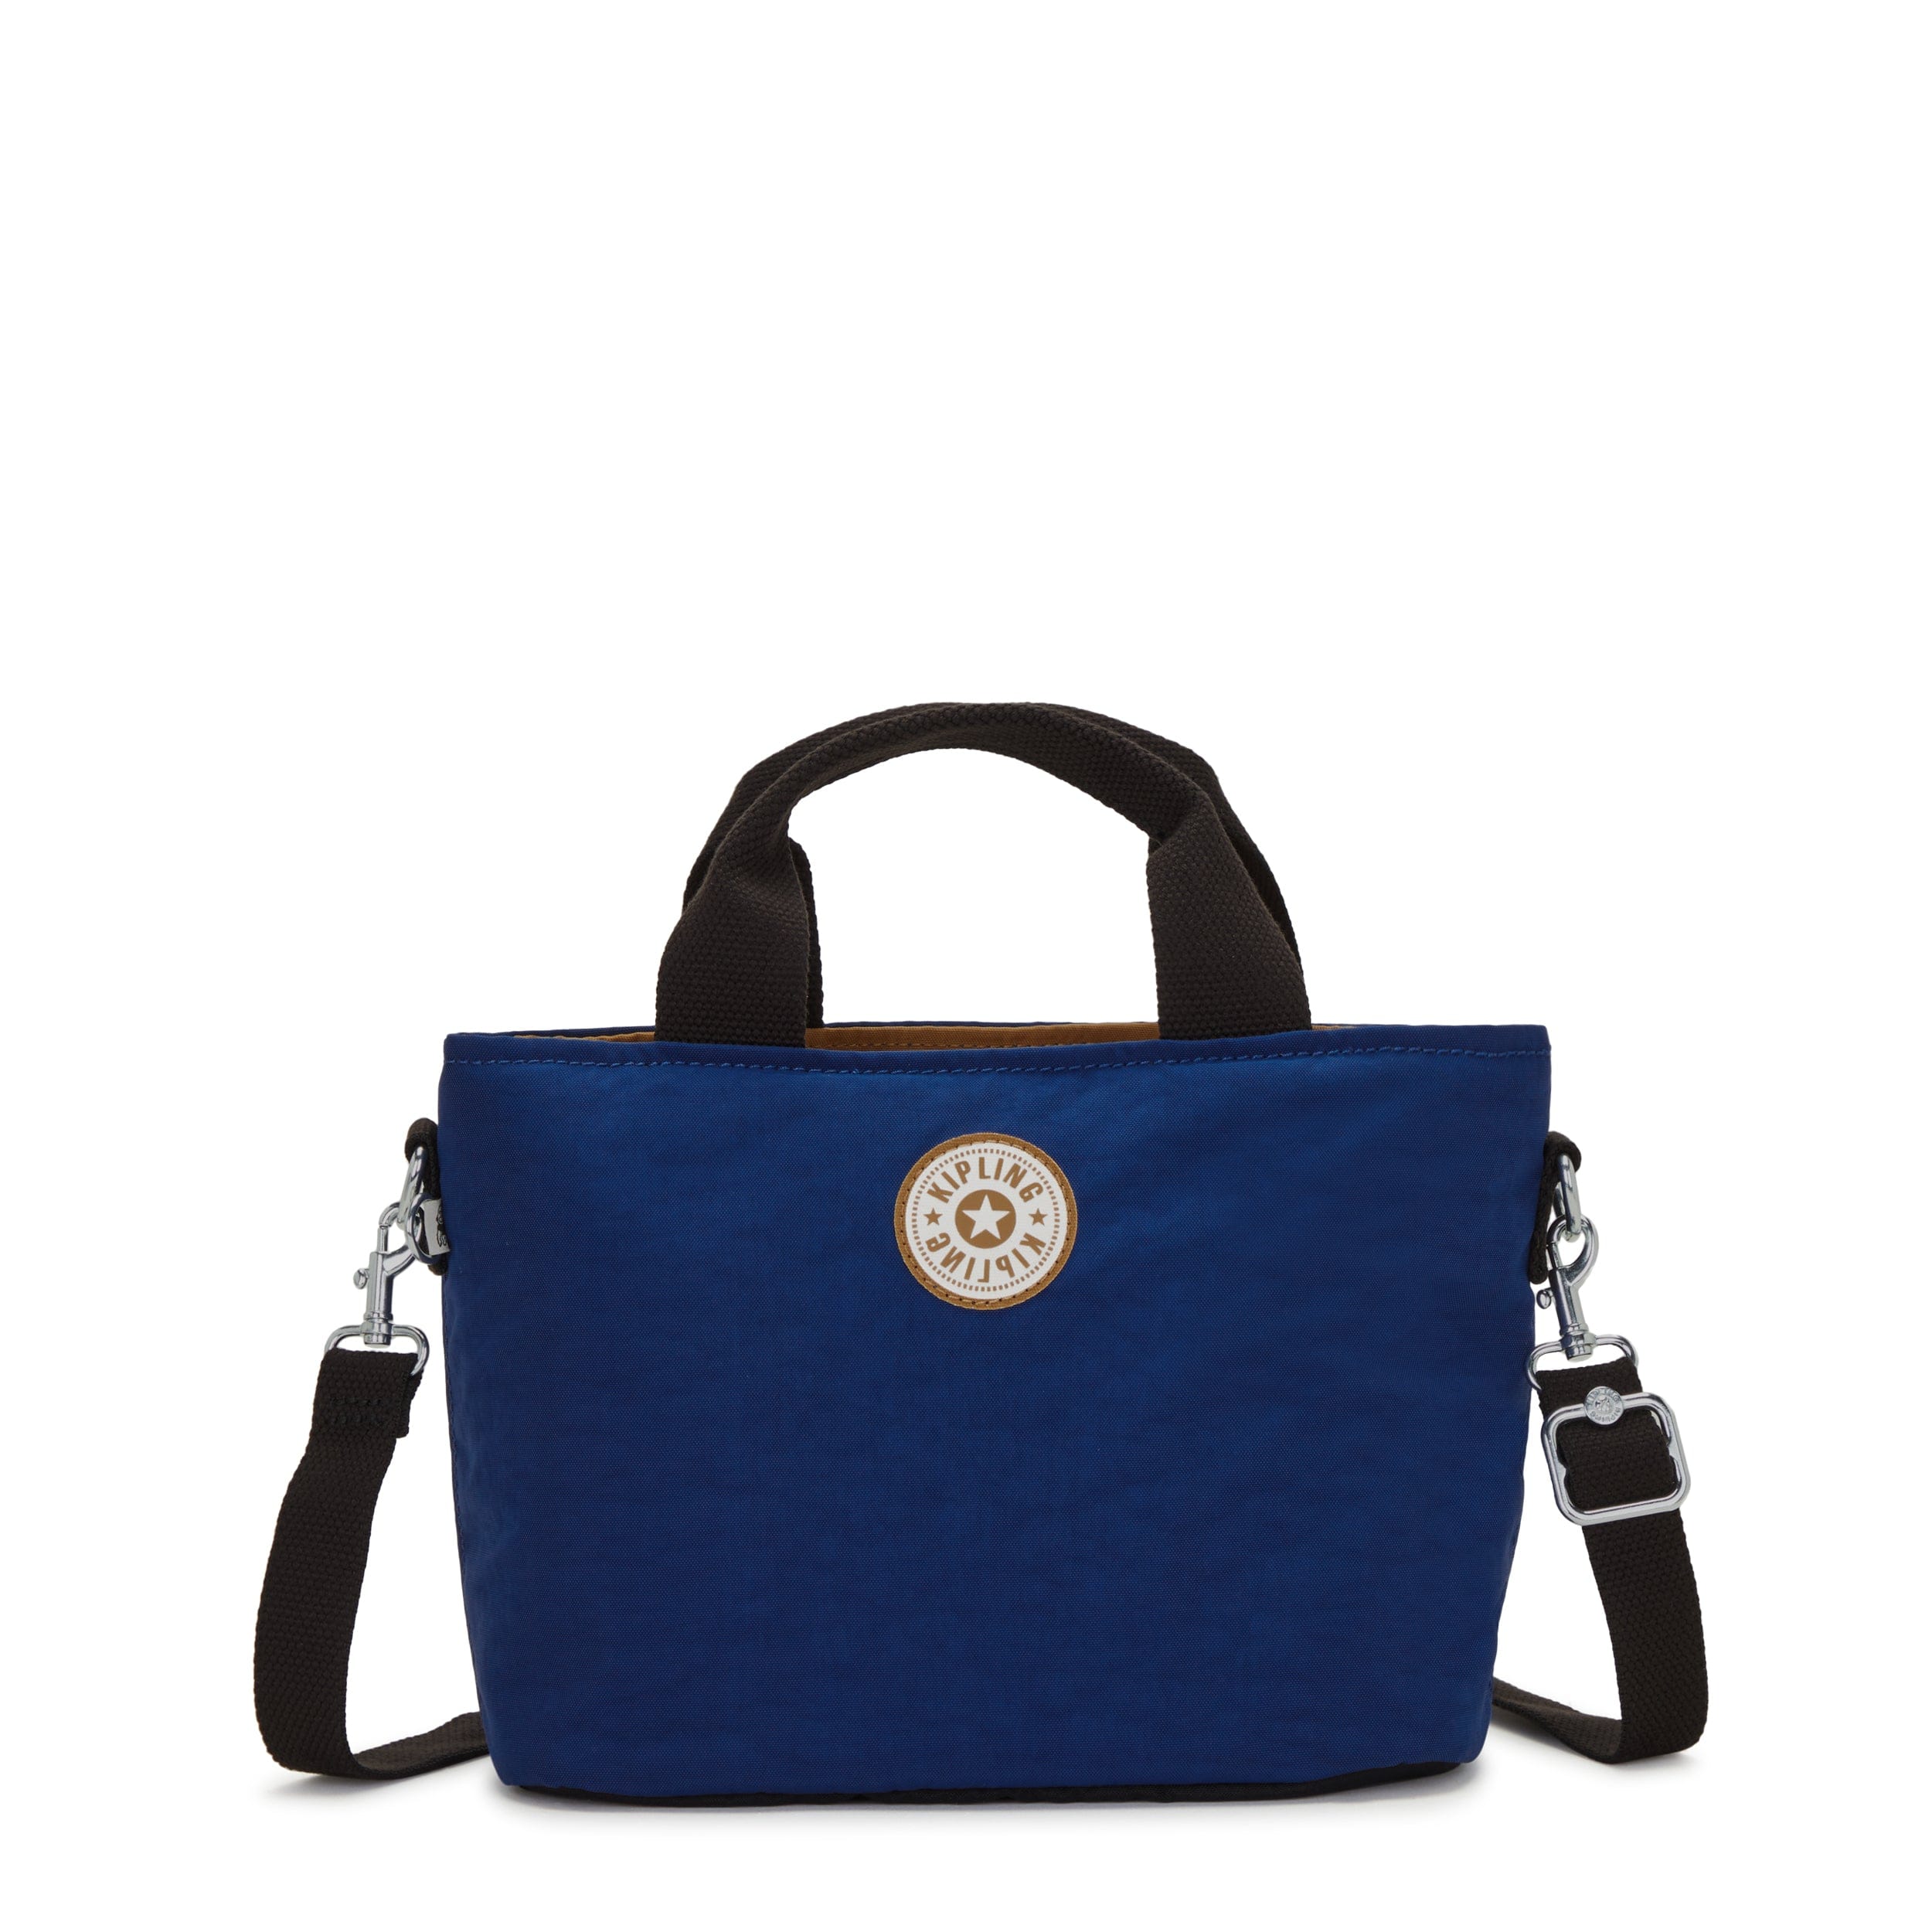 KIPLING-Minta-Small Shoulder Bag (With Removable Shoulder Strap)-Duo Blue Beige-I6370-4NY